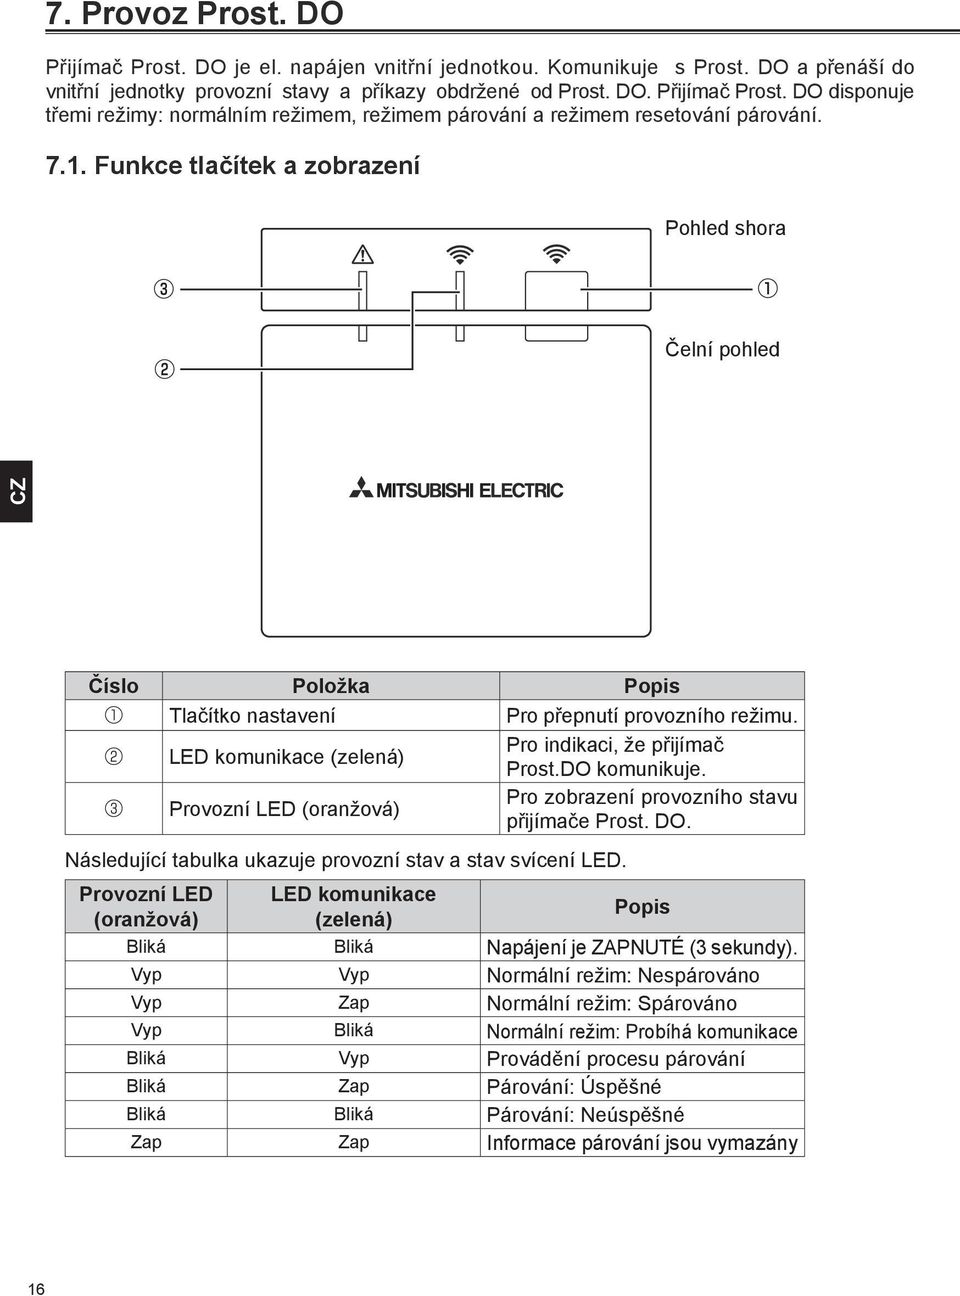 Provozní LED (oranžová) Pro zobrazení provozního stavu přijímače Prost. DO. Následující tabulka ukazuje provozní stav a stav svícení LED.